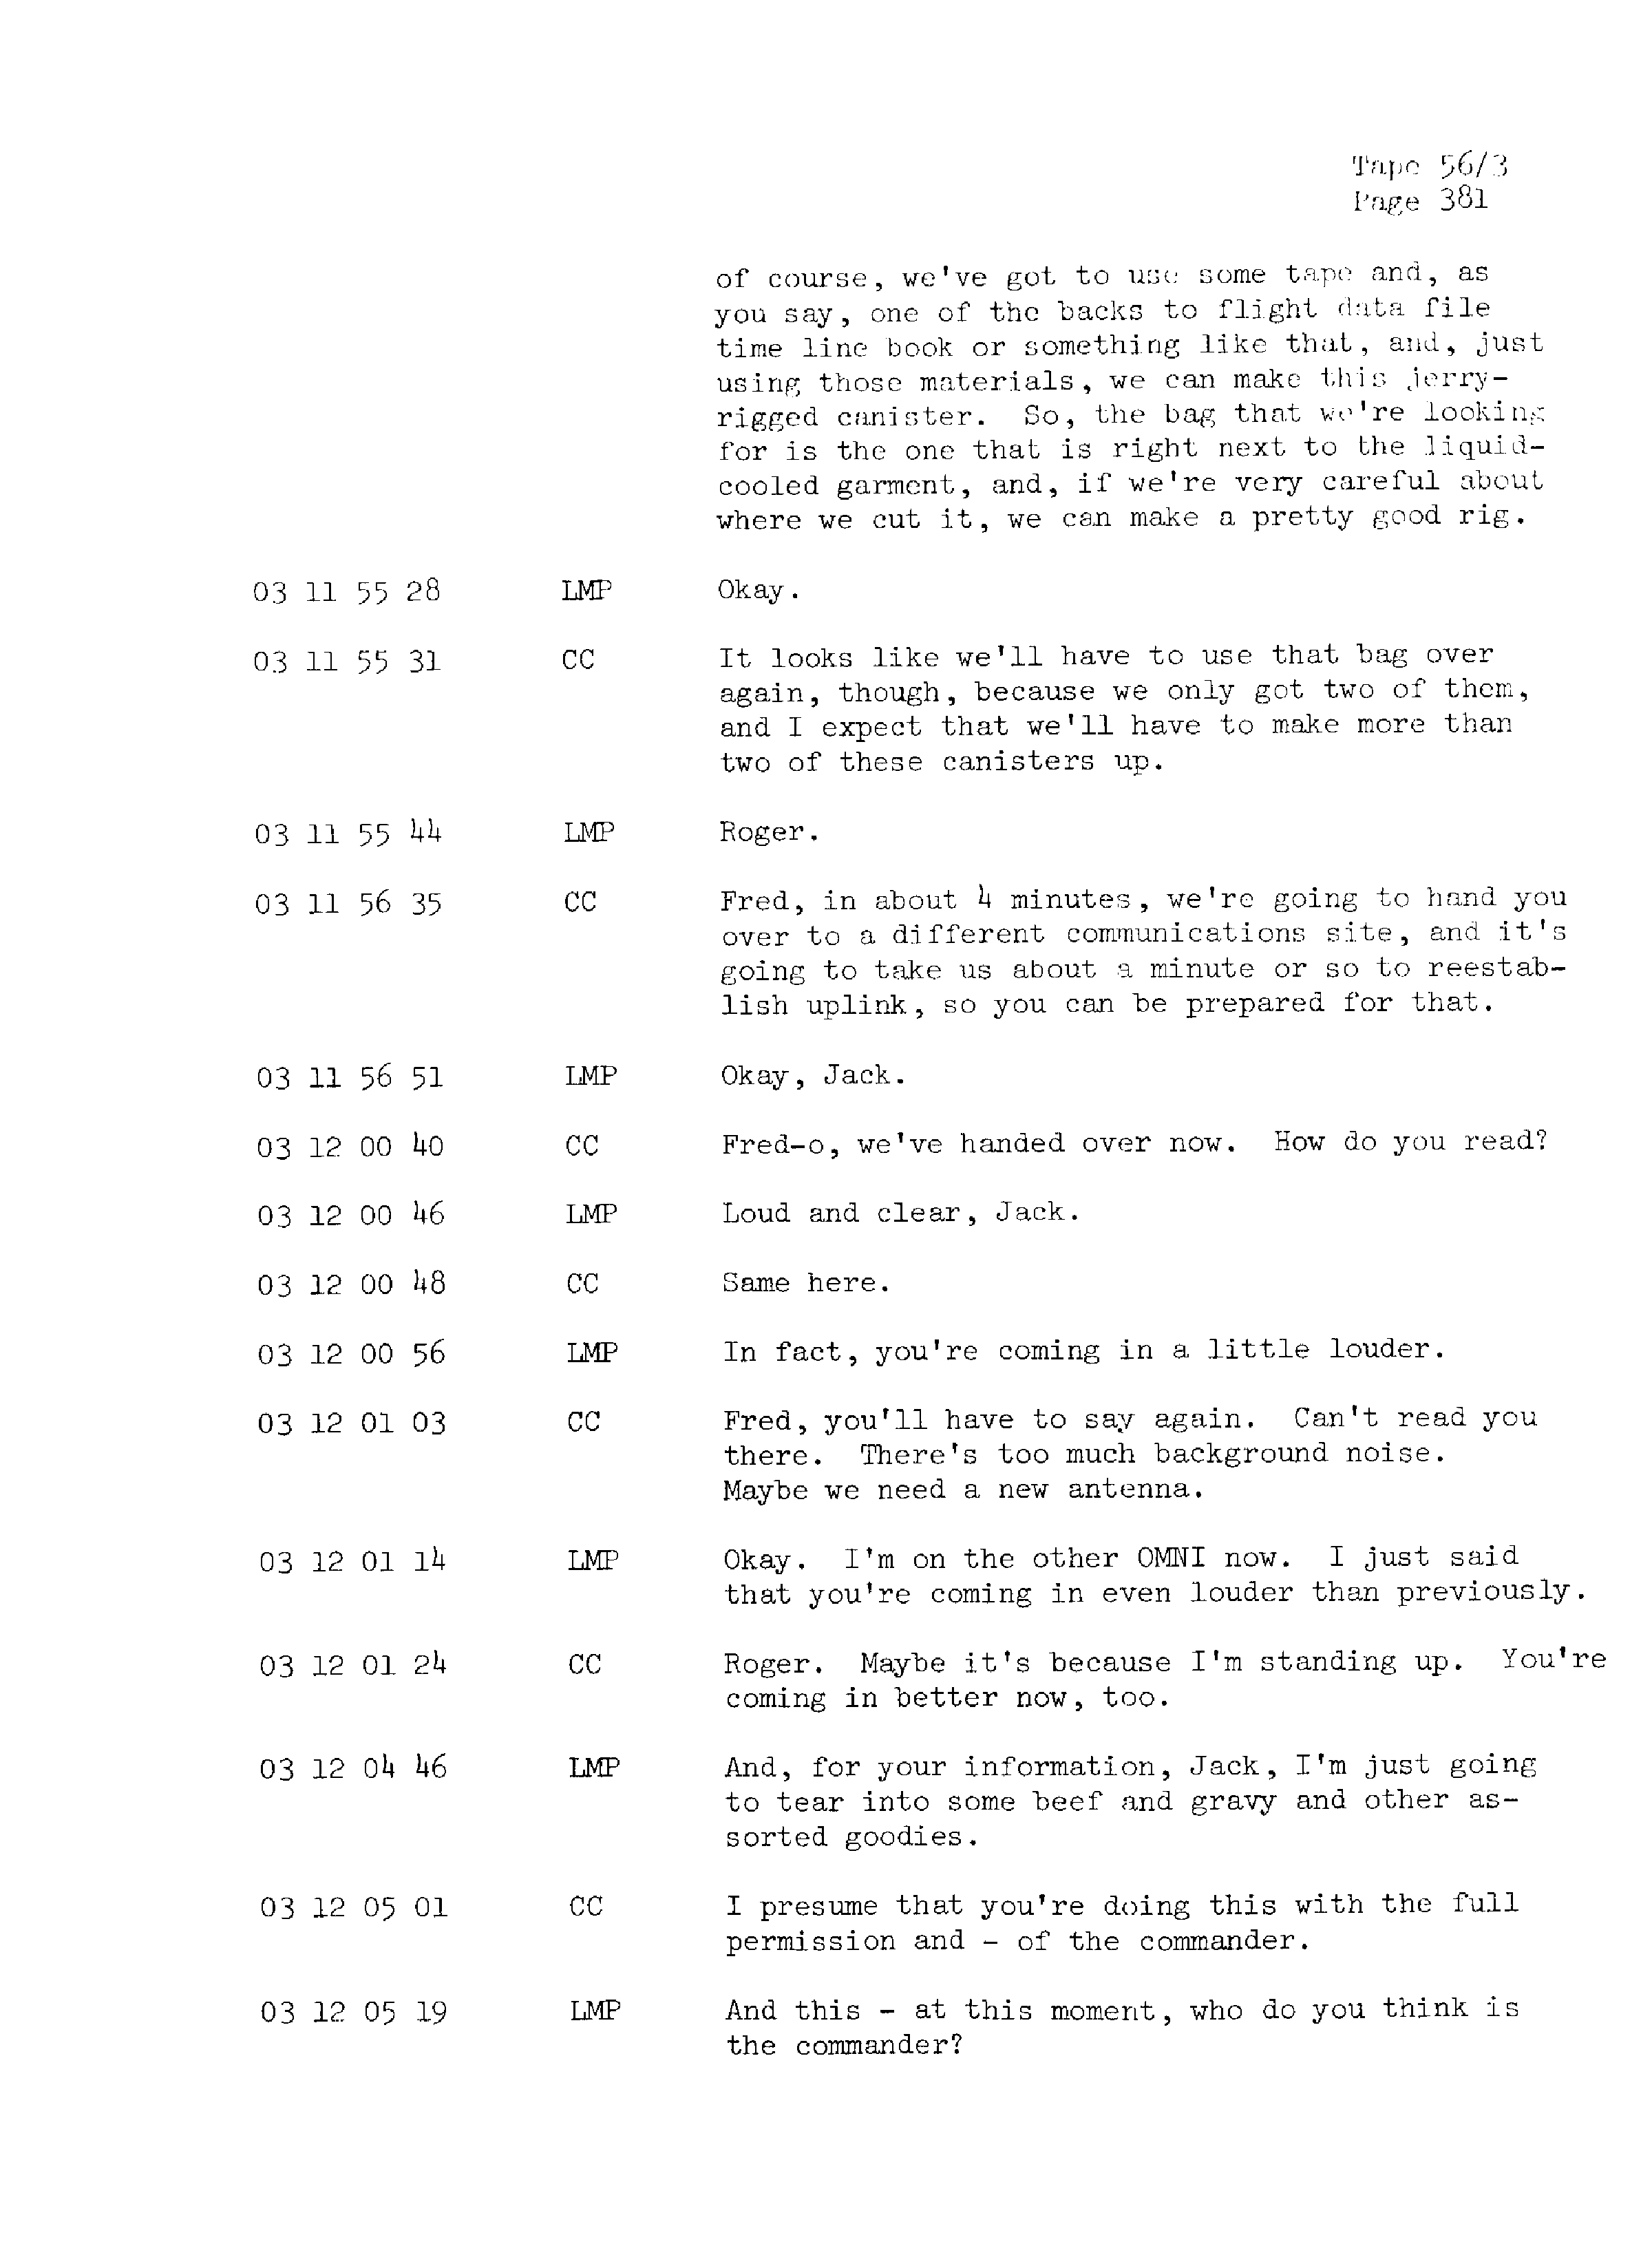 Page 388 of Apollo 13’s original transcript